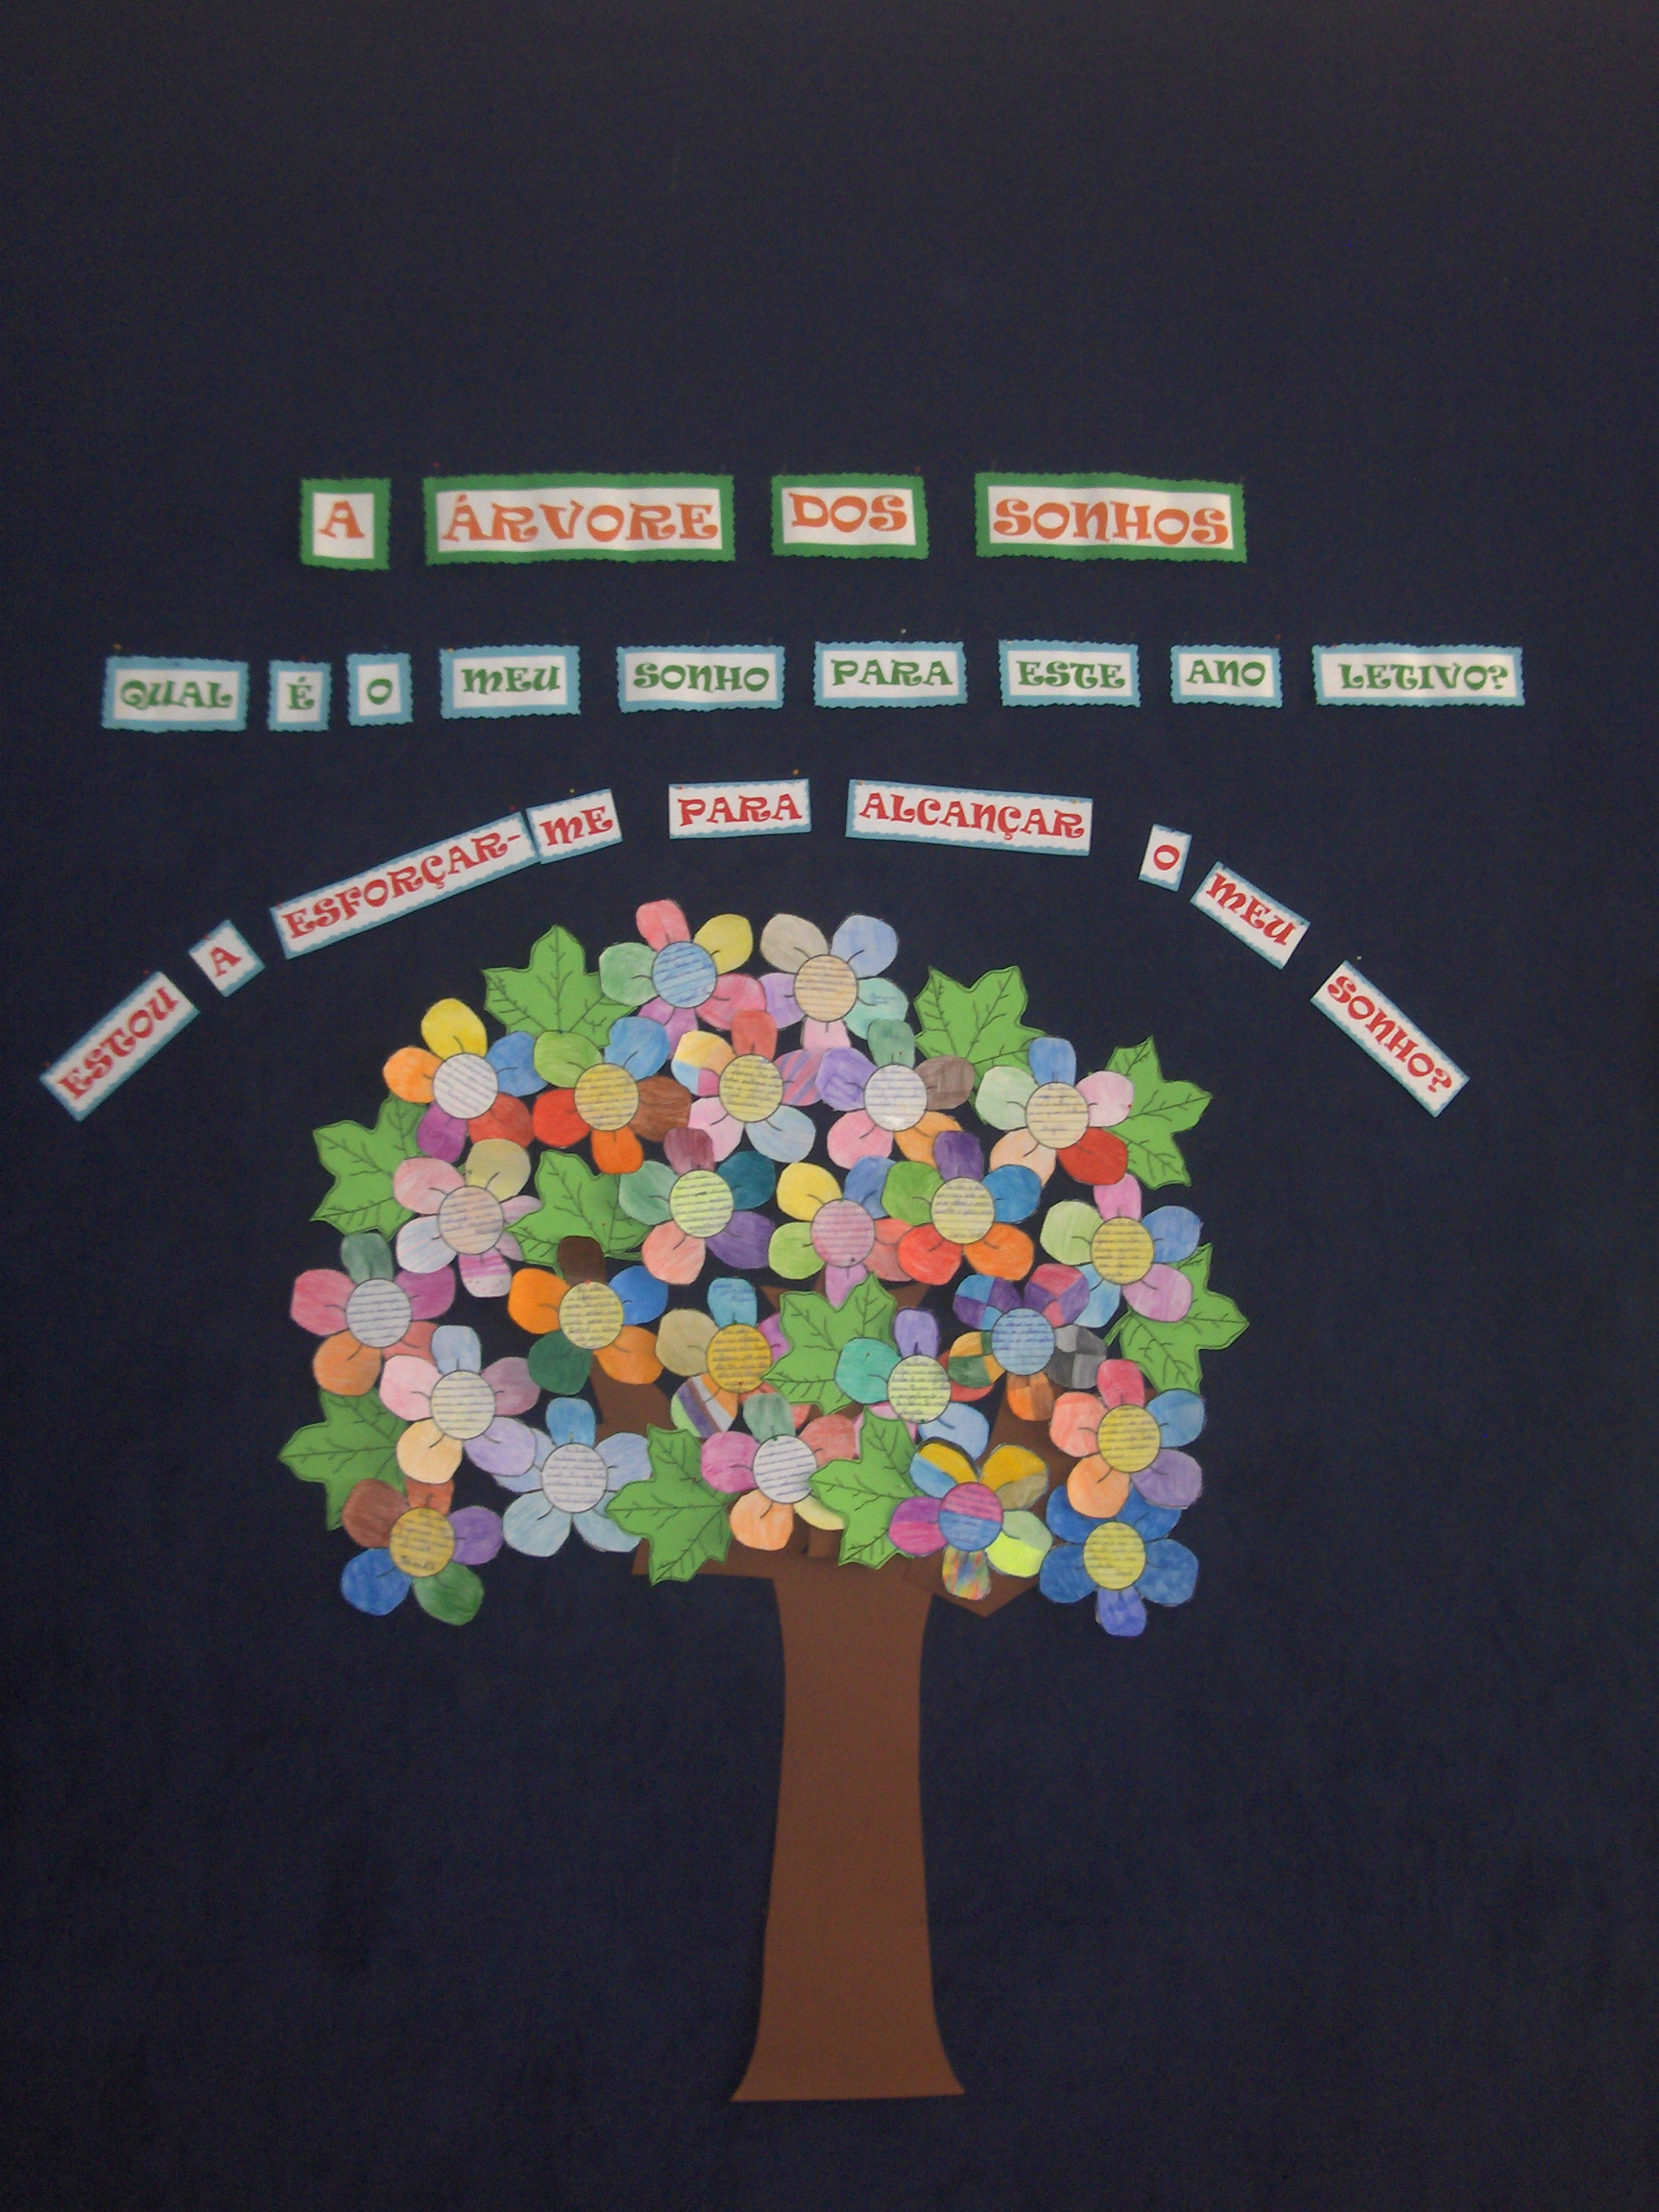 خوابوں کا درخت: پھلوں سے بھرا درخت آپ کے مقاصد کو حاصل کرنے میں کس طرح مدد کر سکتا ہے۔